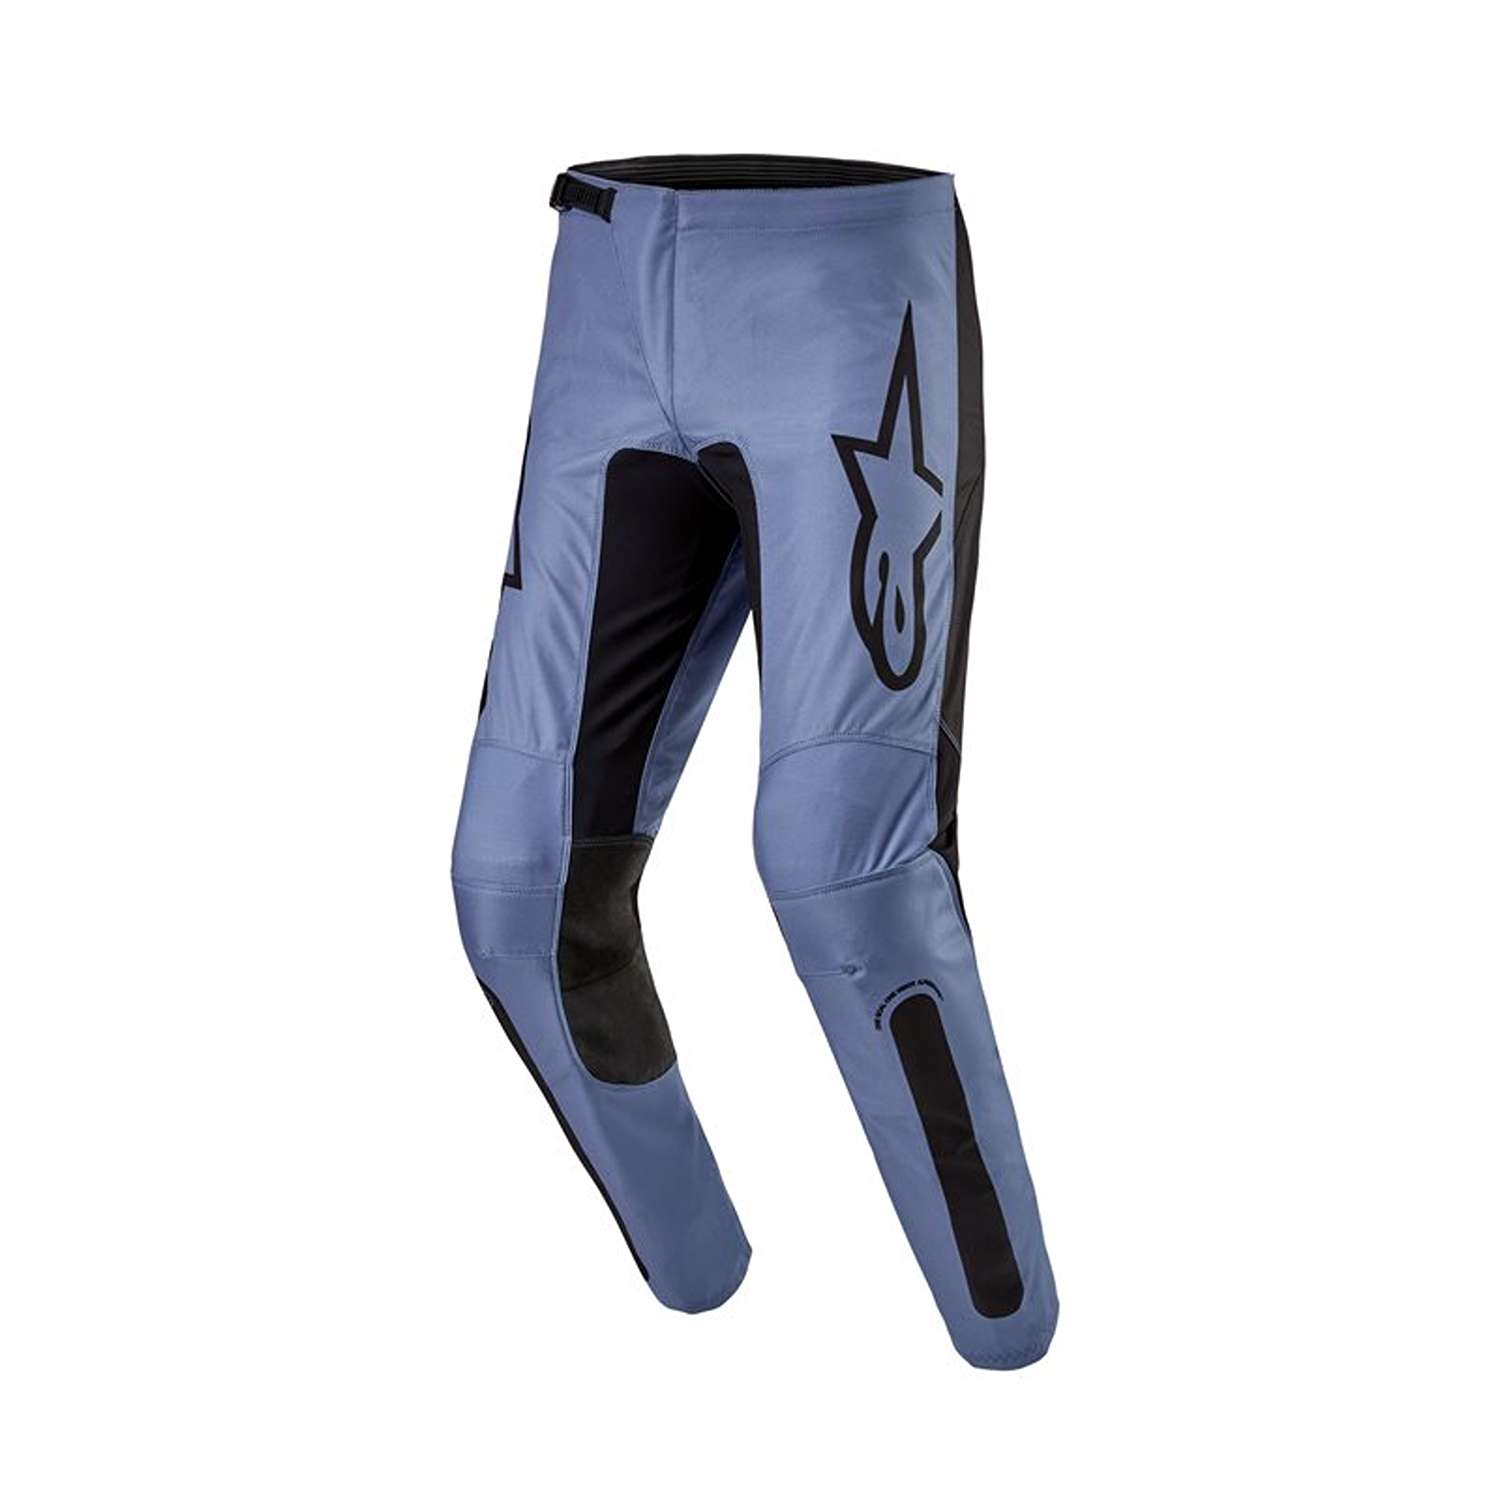 Image of EU Alpinestars Fluid Lurv Pants Light Blue Black Taille 34